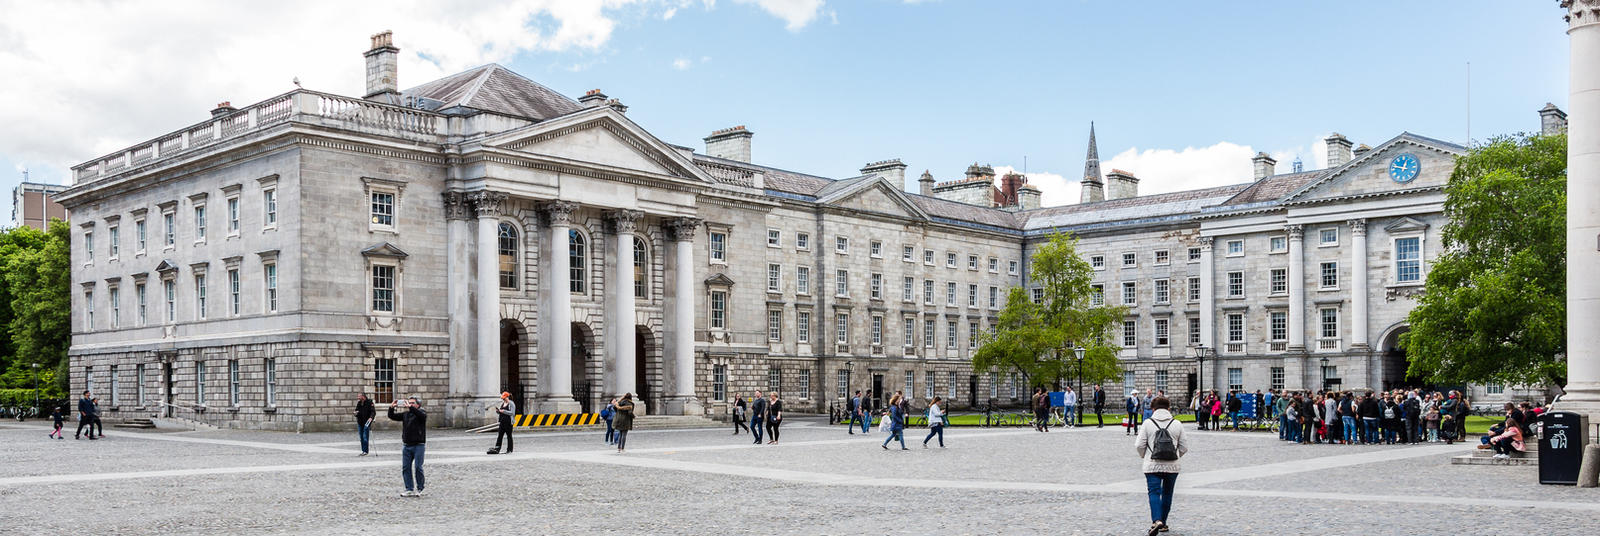 Study in Ireland in one of the top universities